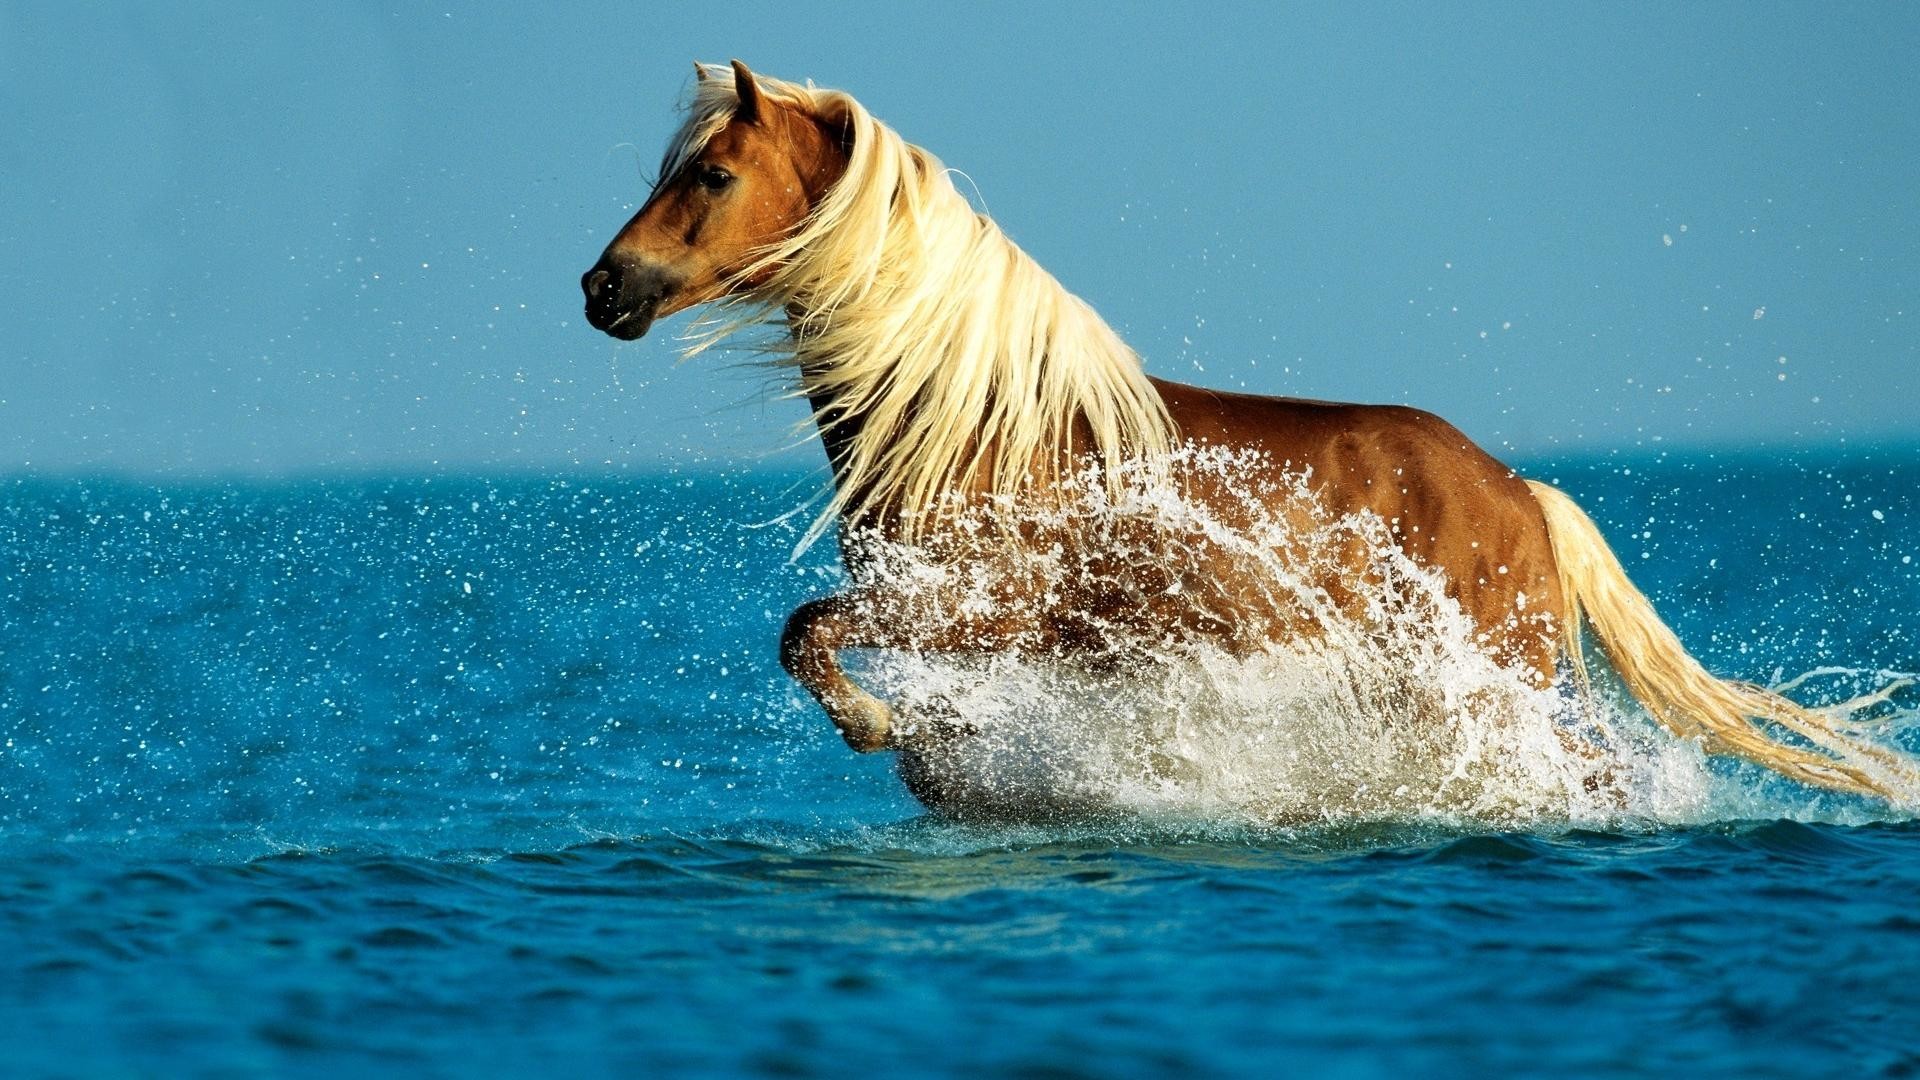 1920x1080  horse running in Sea desktop backgrounds wide wallpapers:1280x800,1440x900,1680x1050  -